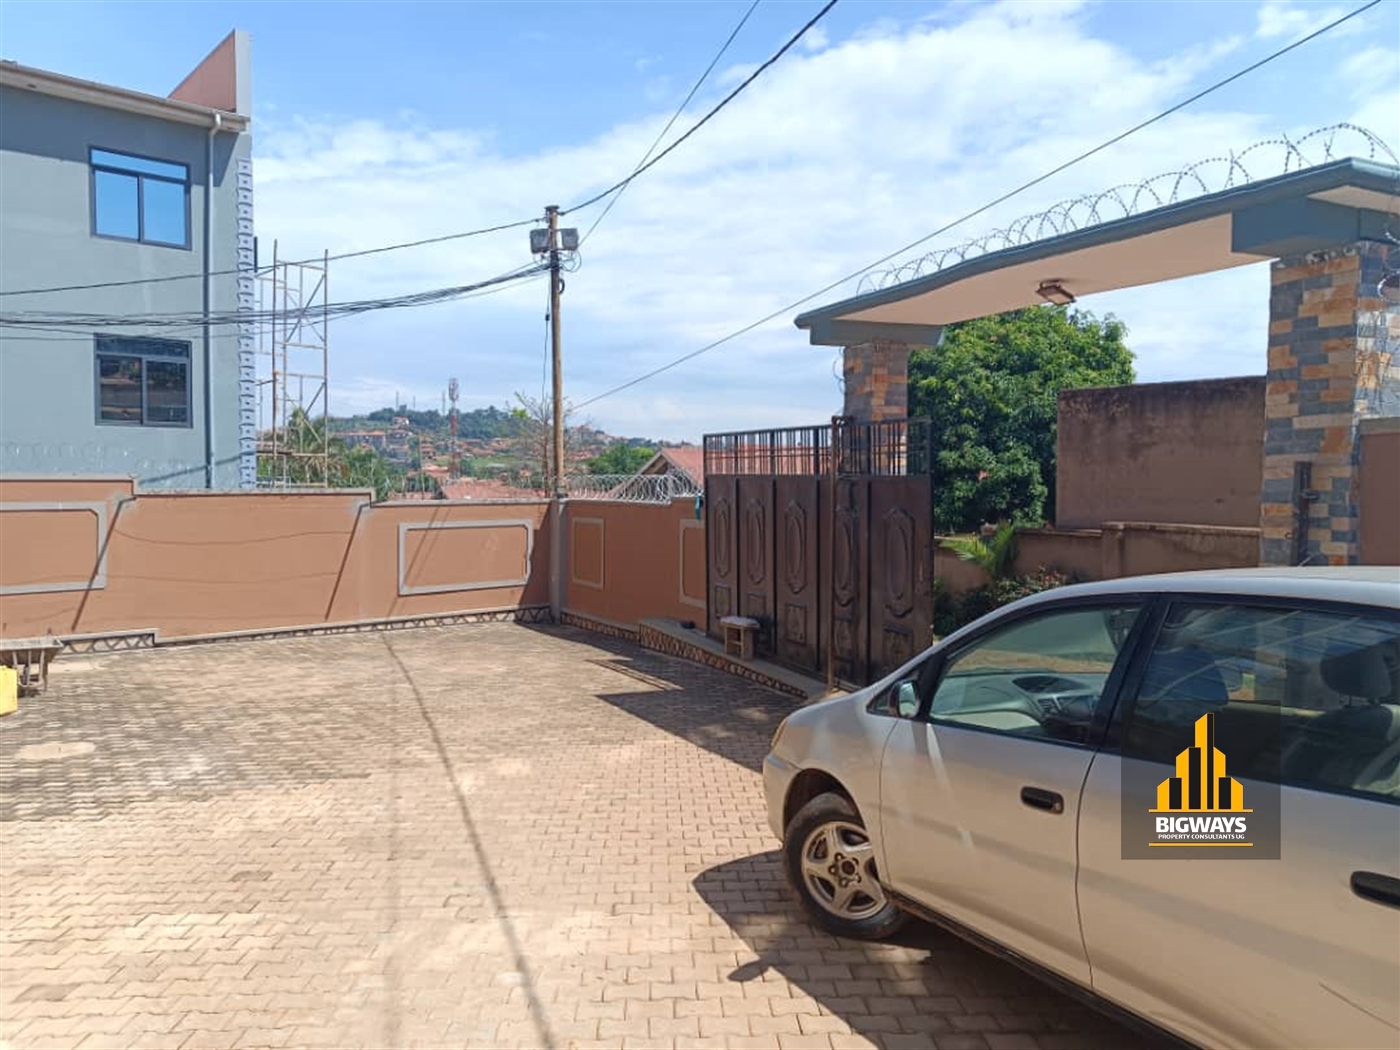 Apartment block for sale in Kisaasi Kampala